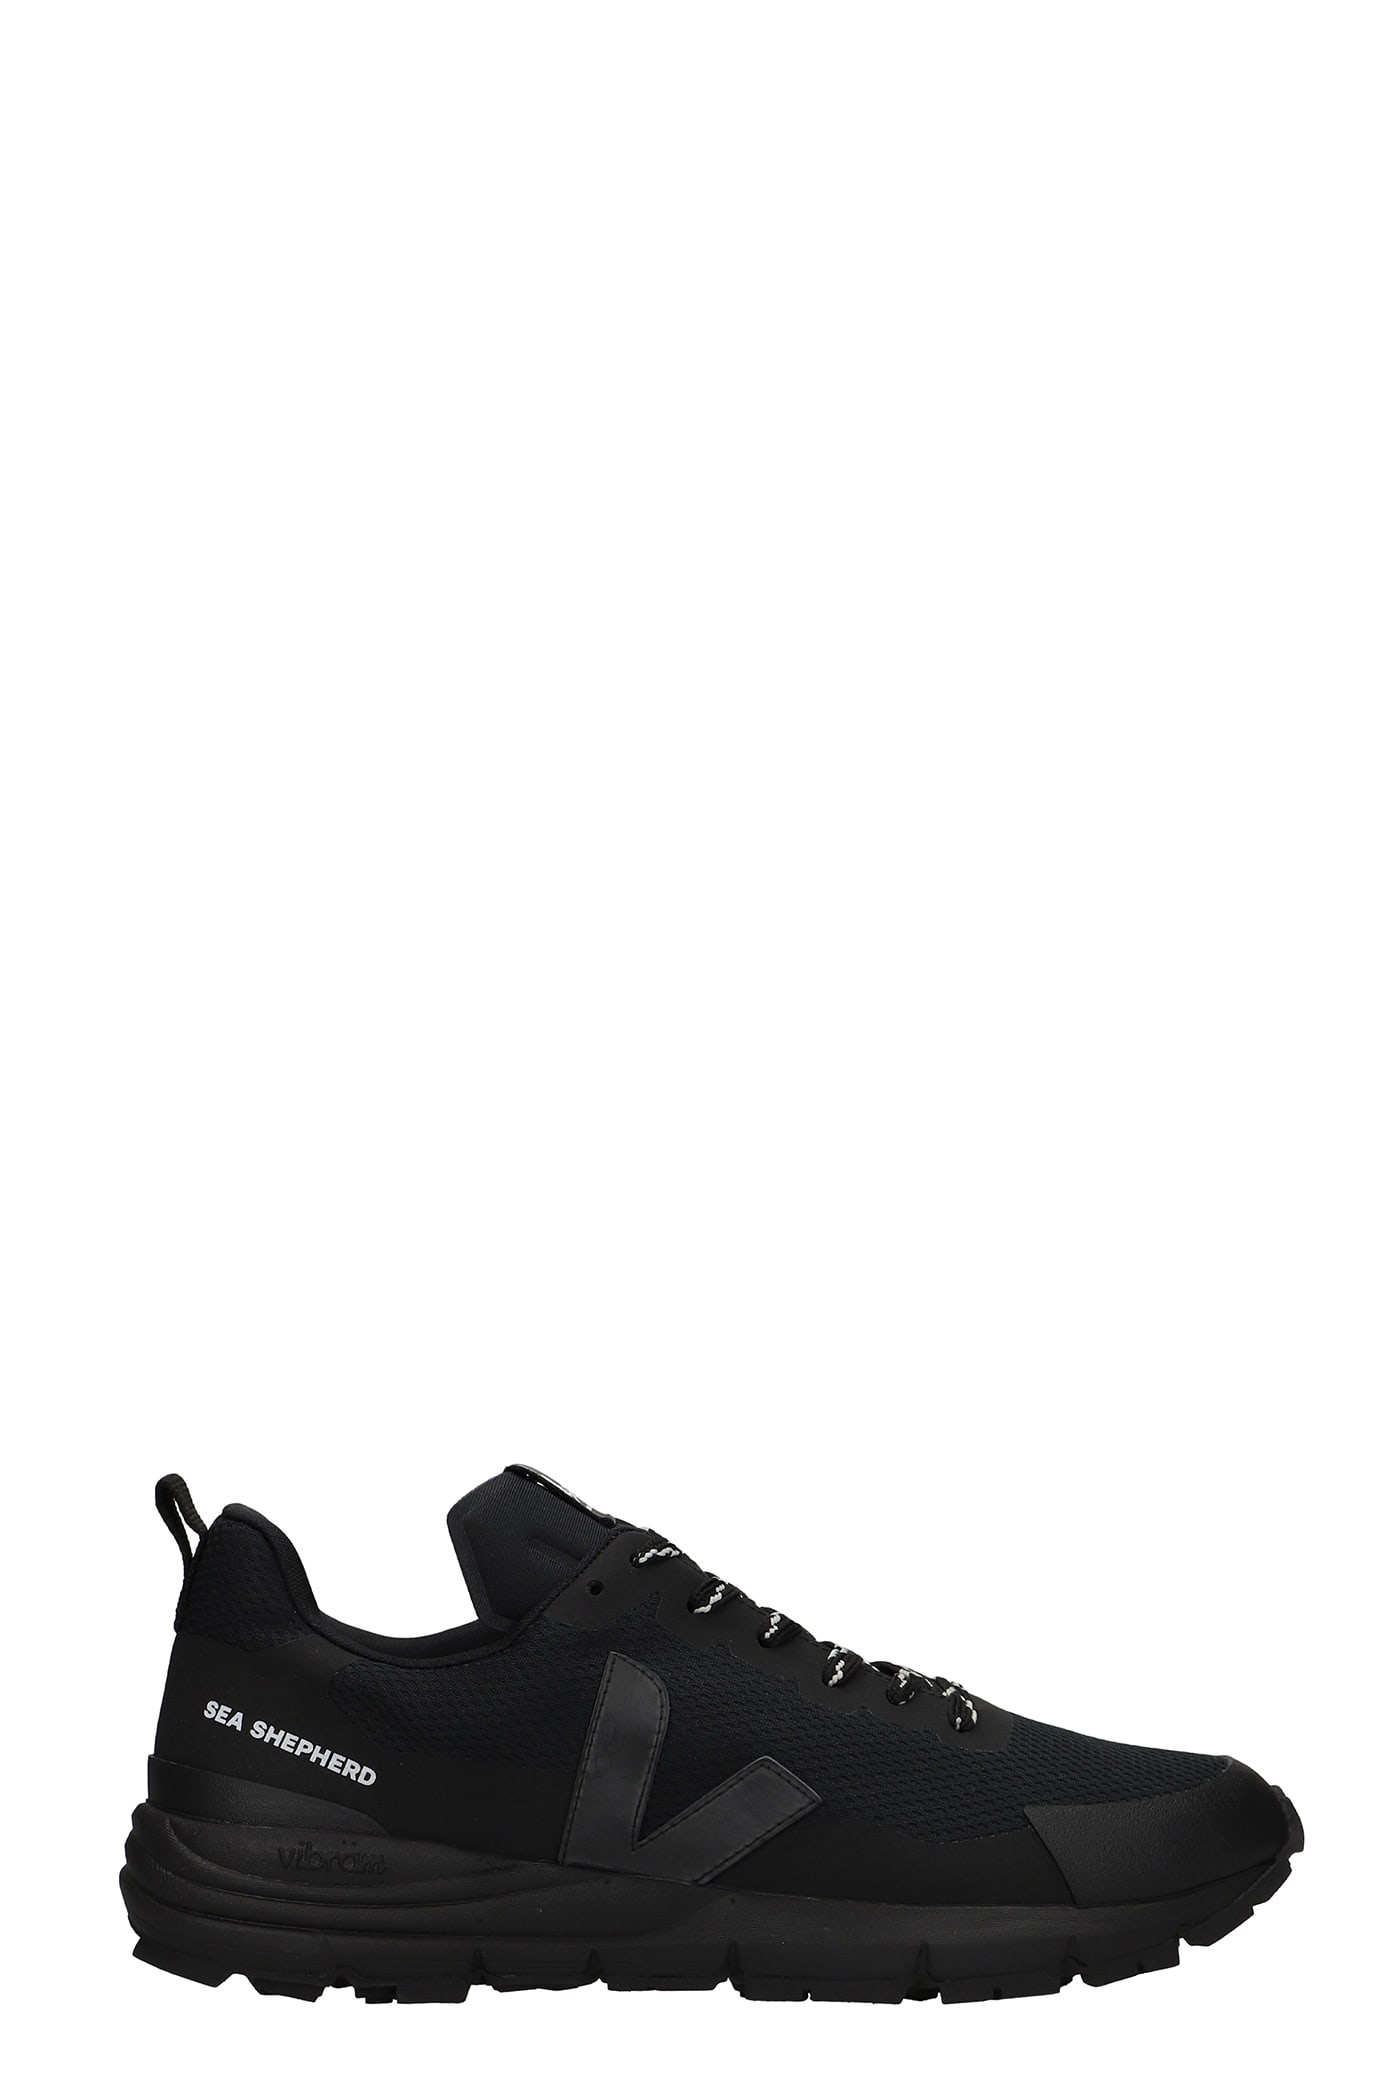 Veja Dekkan Sneakers In Black Synthetic Fibers